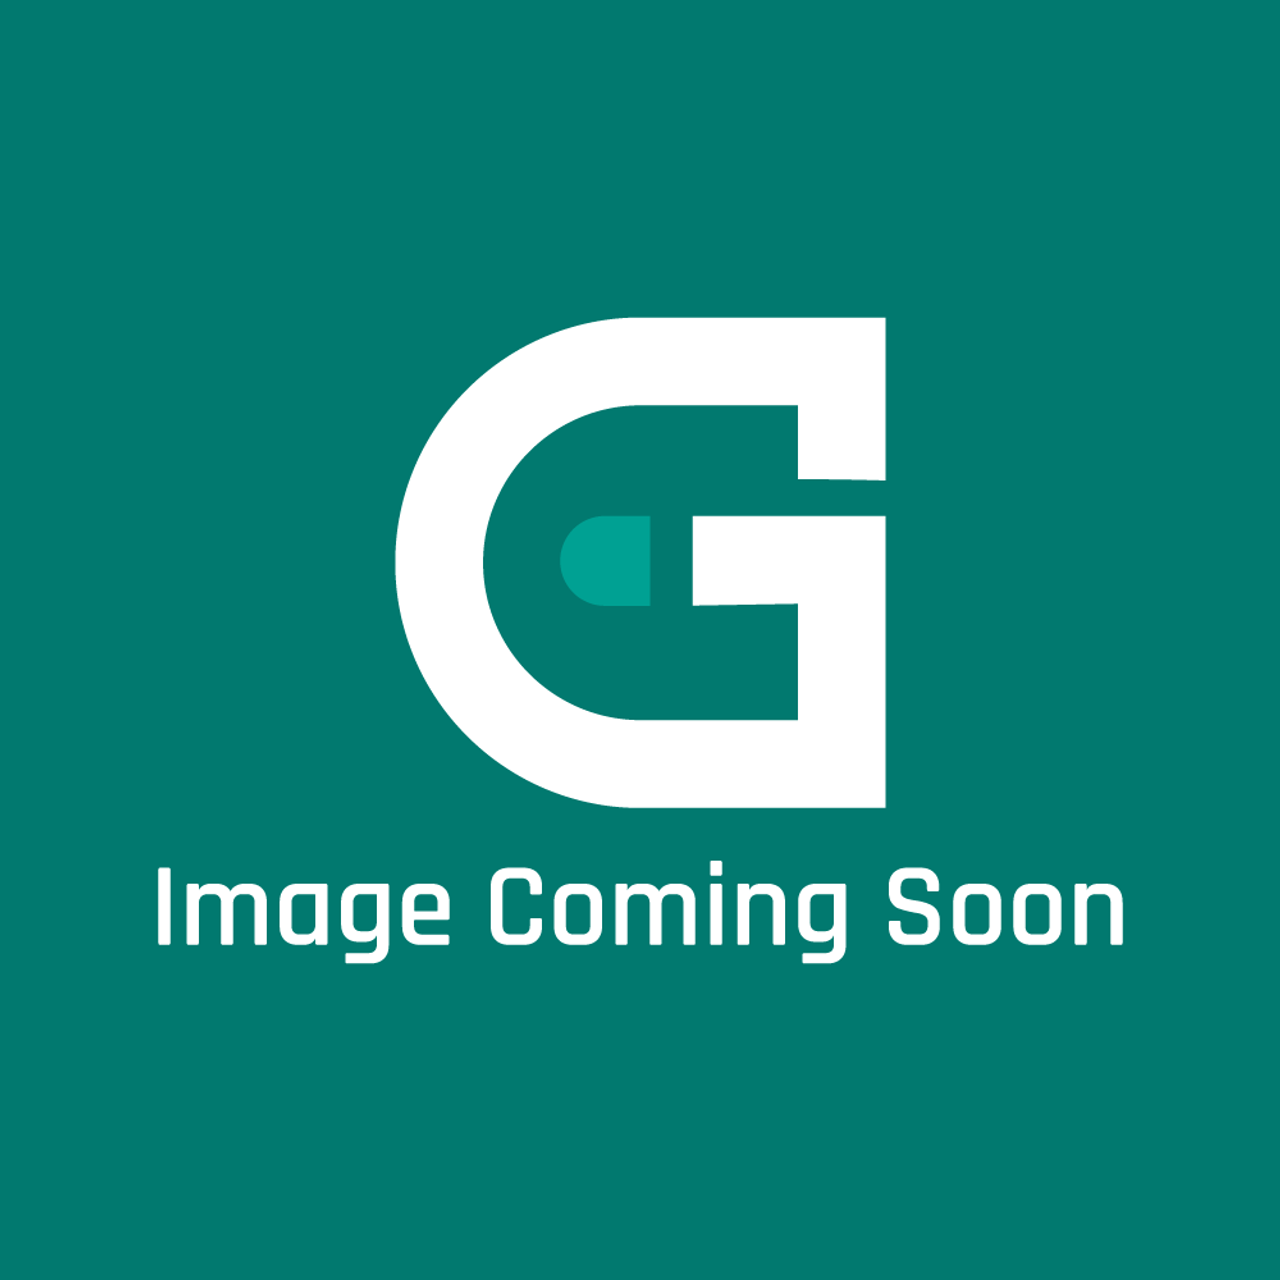 AGA Marvel A1495 - Escutcheons Ref.814/1/202 Oc - Image Coming Soon!